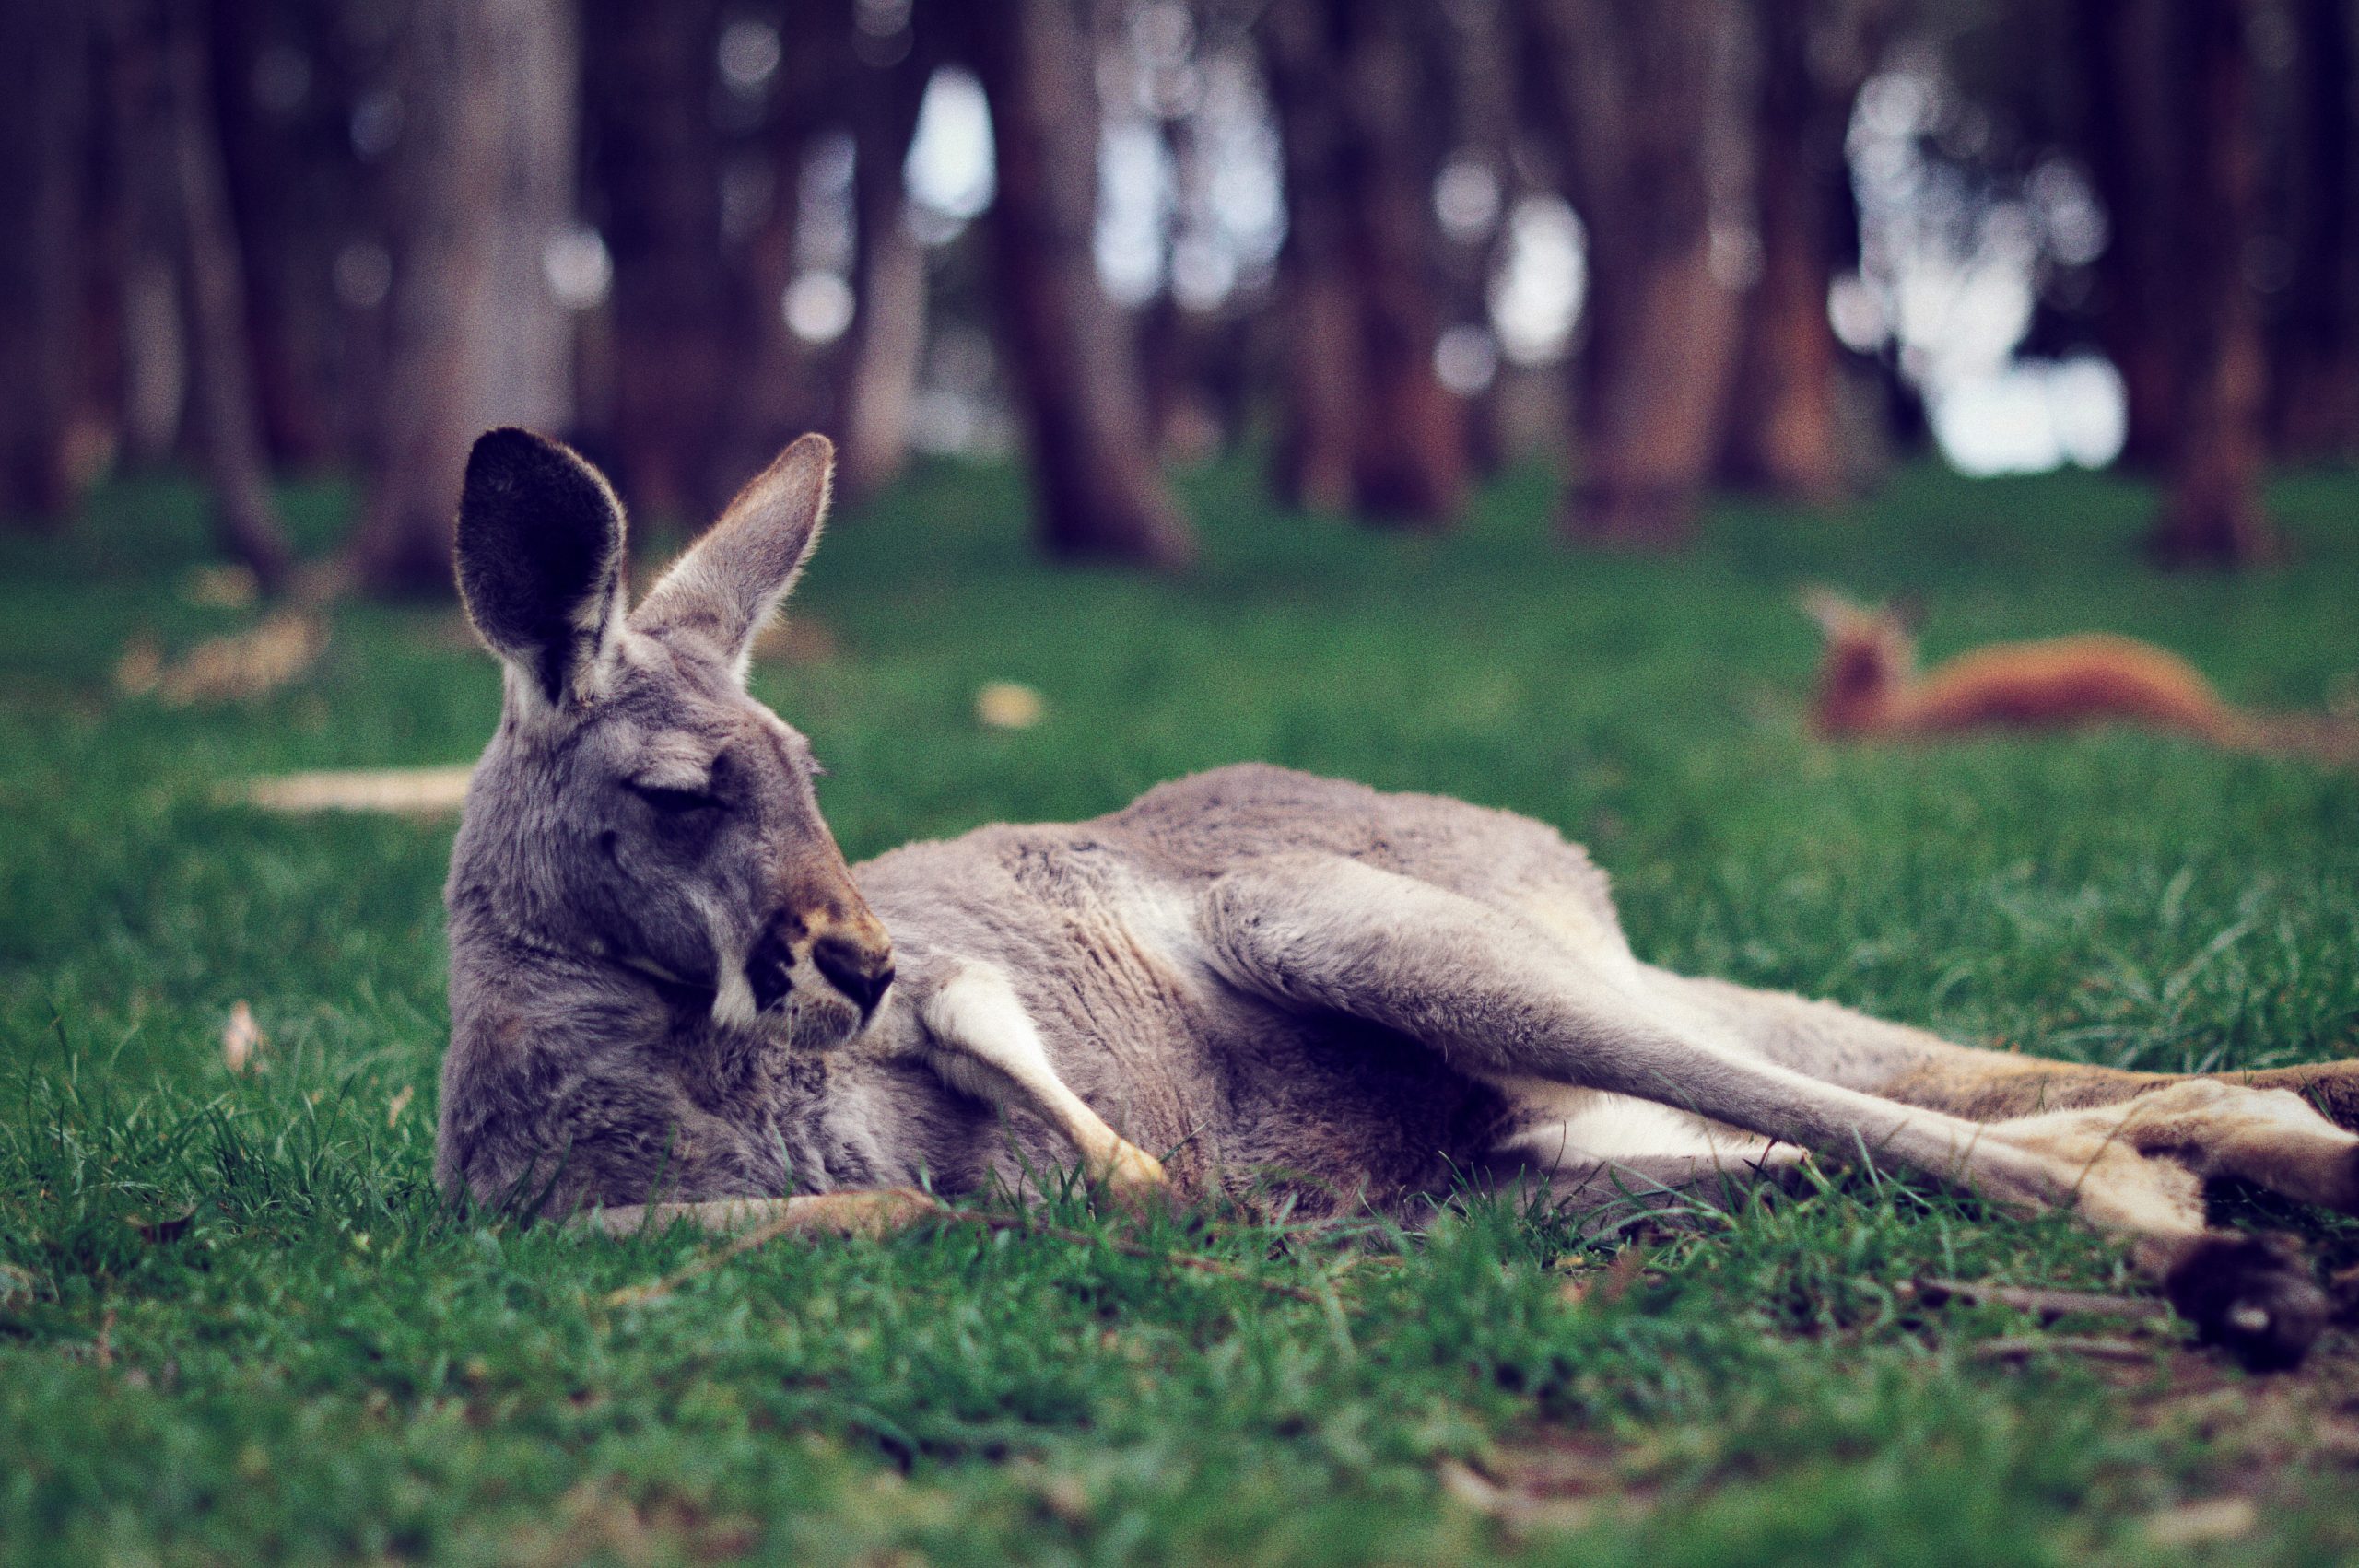 11 Unglaubliche Känguru Fakten - Australien Backpackers Guide bestimmt für Haben Männliche Kängurus Einen Beutel